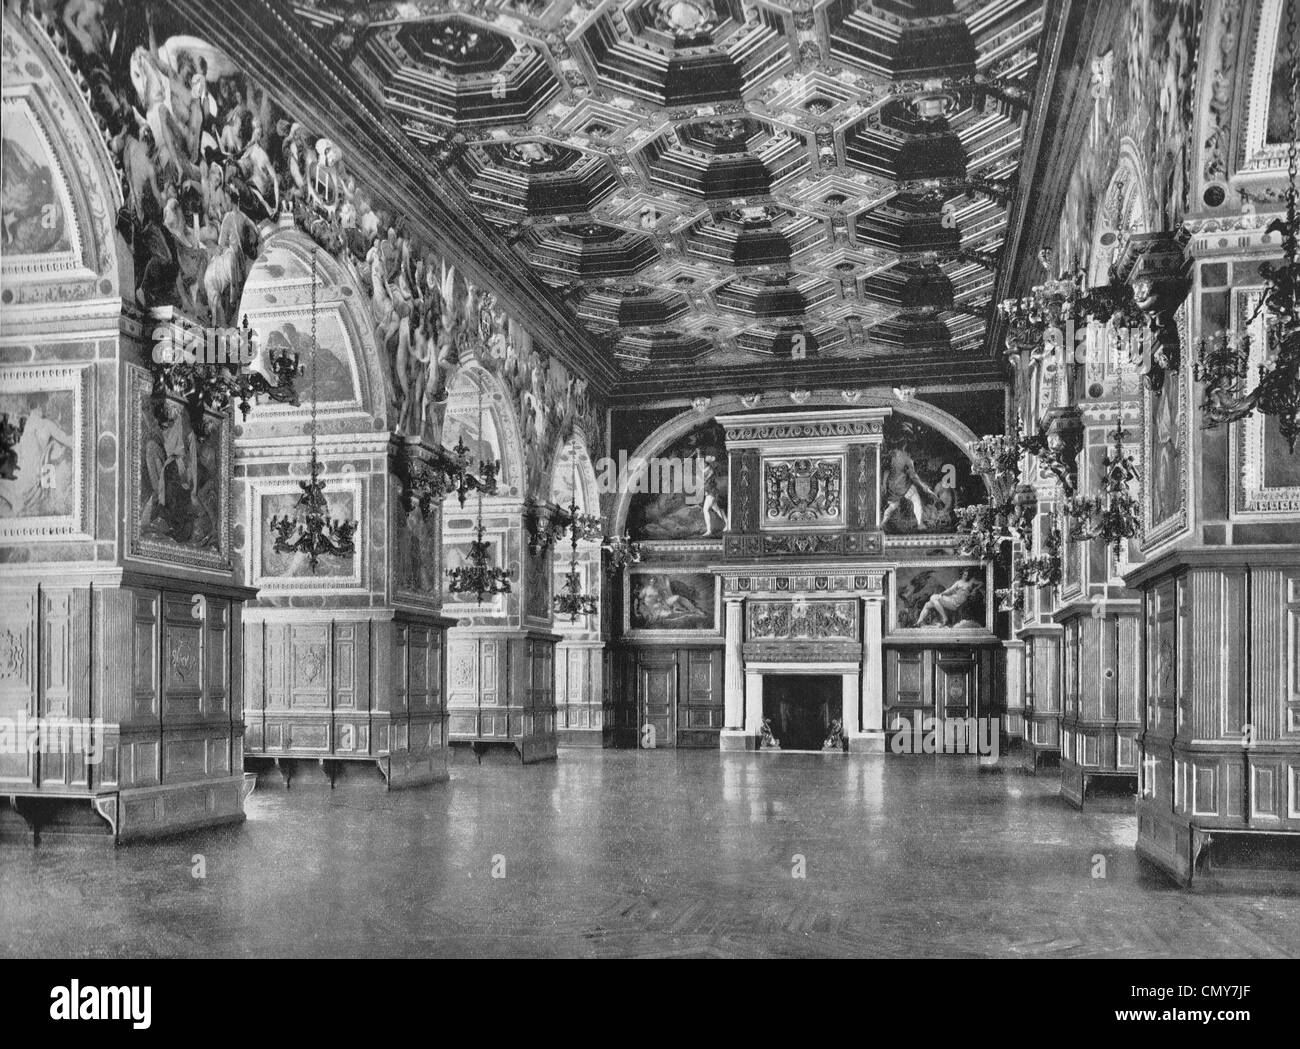 Galería de Enrique II, el palacio de Fontainebleau, Francia, circa 1890 Foto de stock